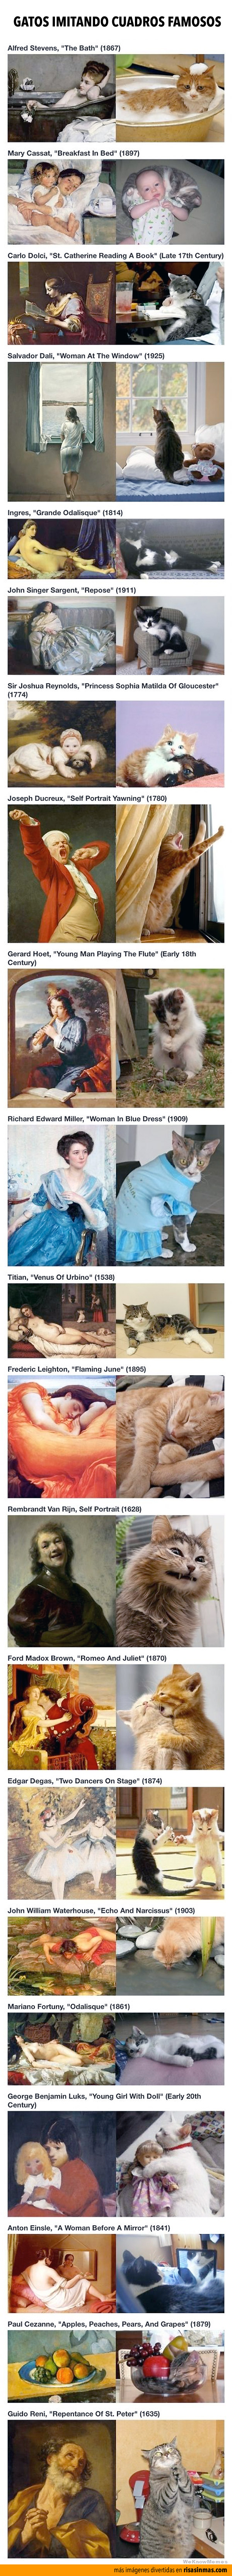 Gatos imitando cuadros famosos